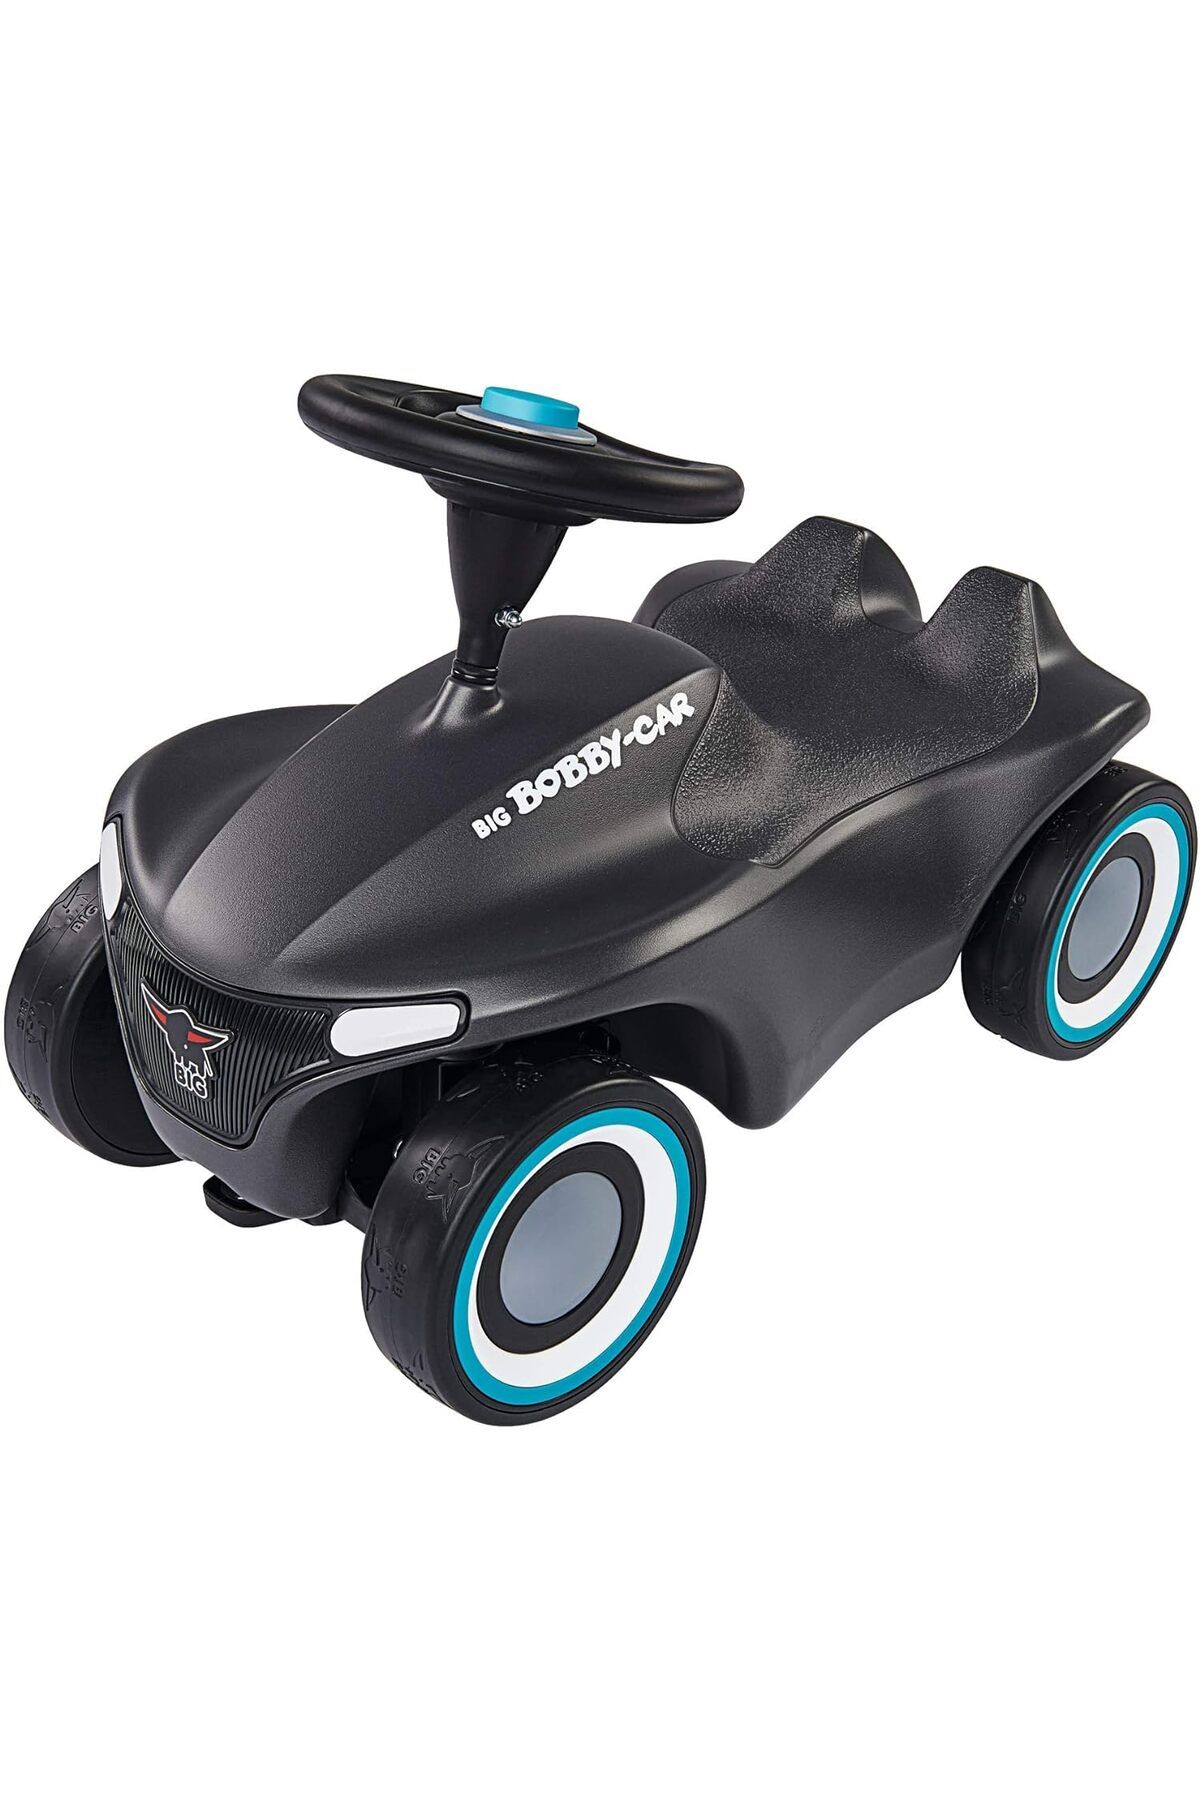 BIG Toy Factory Big-Bobby-Car Neo çocuklar için itmeli araç, sessiz tekerlek, modern tasarım, 1 yaş ve üzeri için